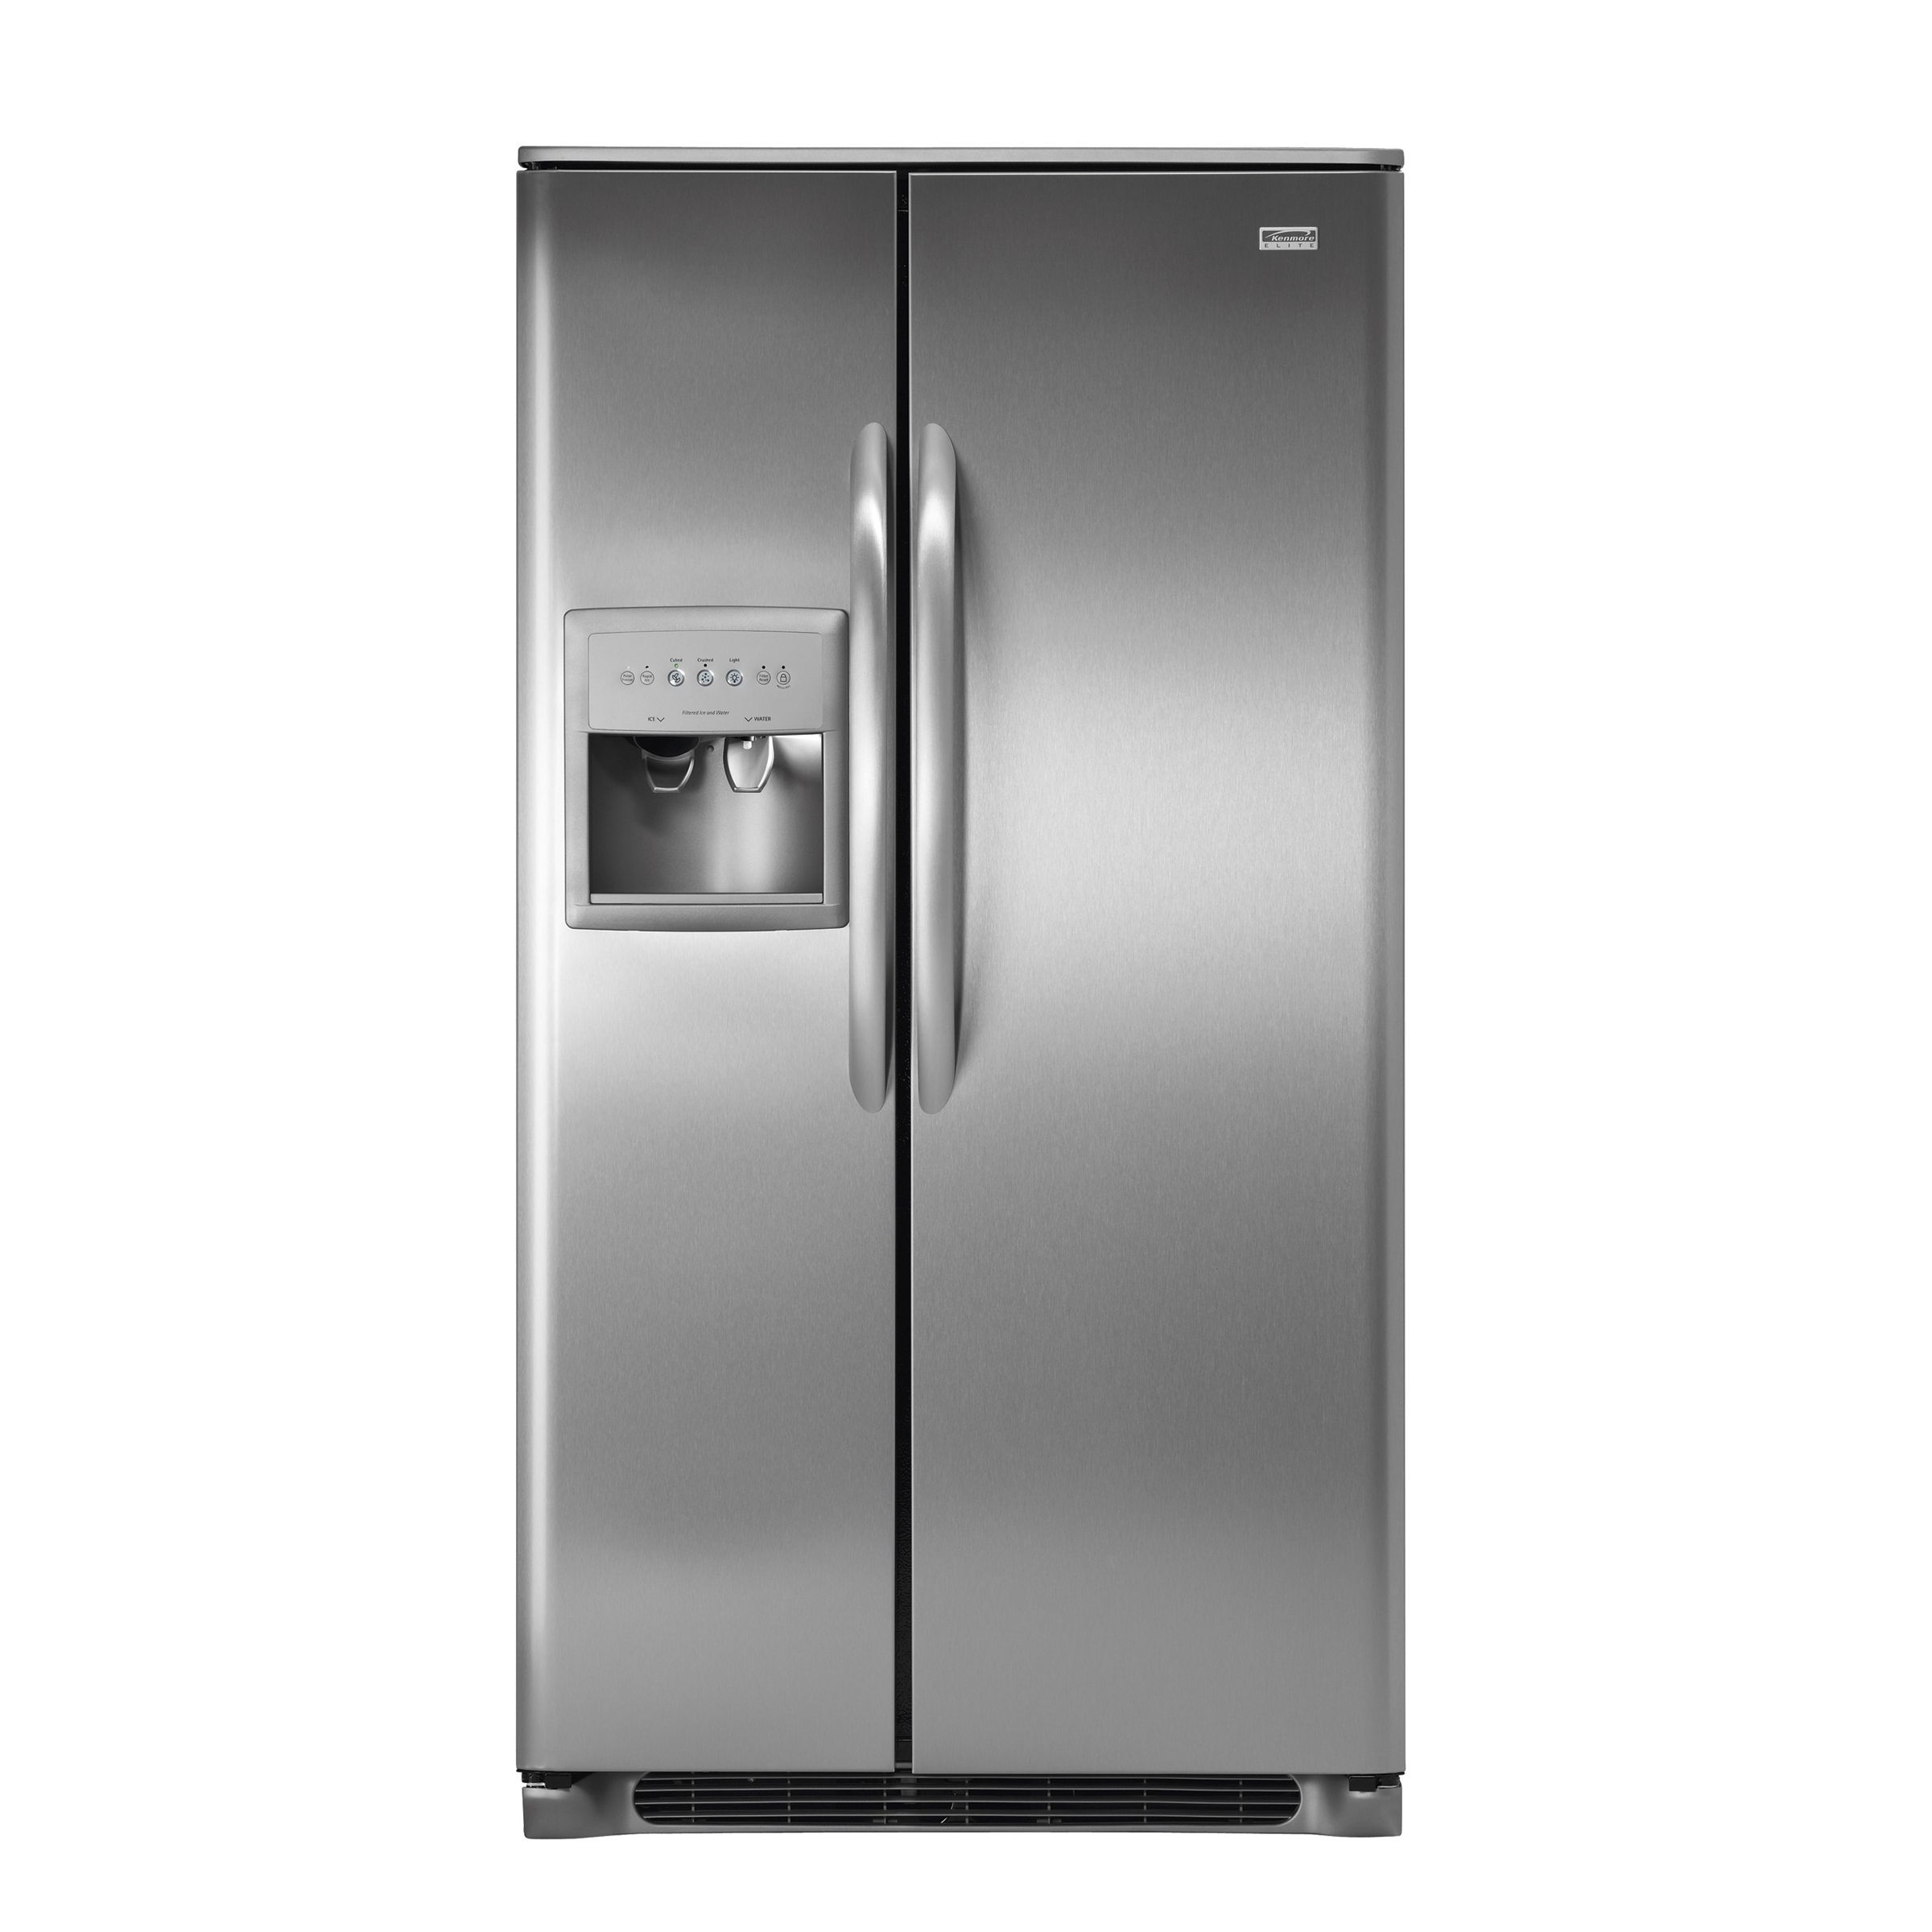 Холодильник Frigidaire GLSE 28v9 b. Frigidaire Elite холодильник fpci518tfw2. Холодильник Frigidaire gltp20v9ms. Холодильник Frigidaire Side by Side. Холодильник 8 часов